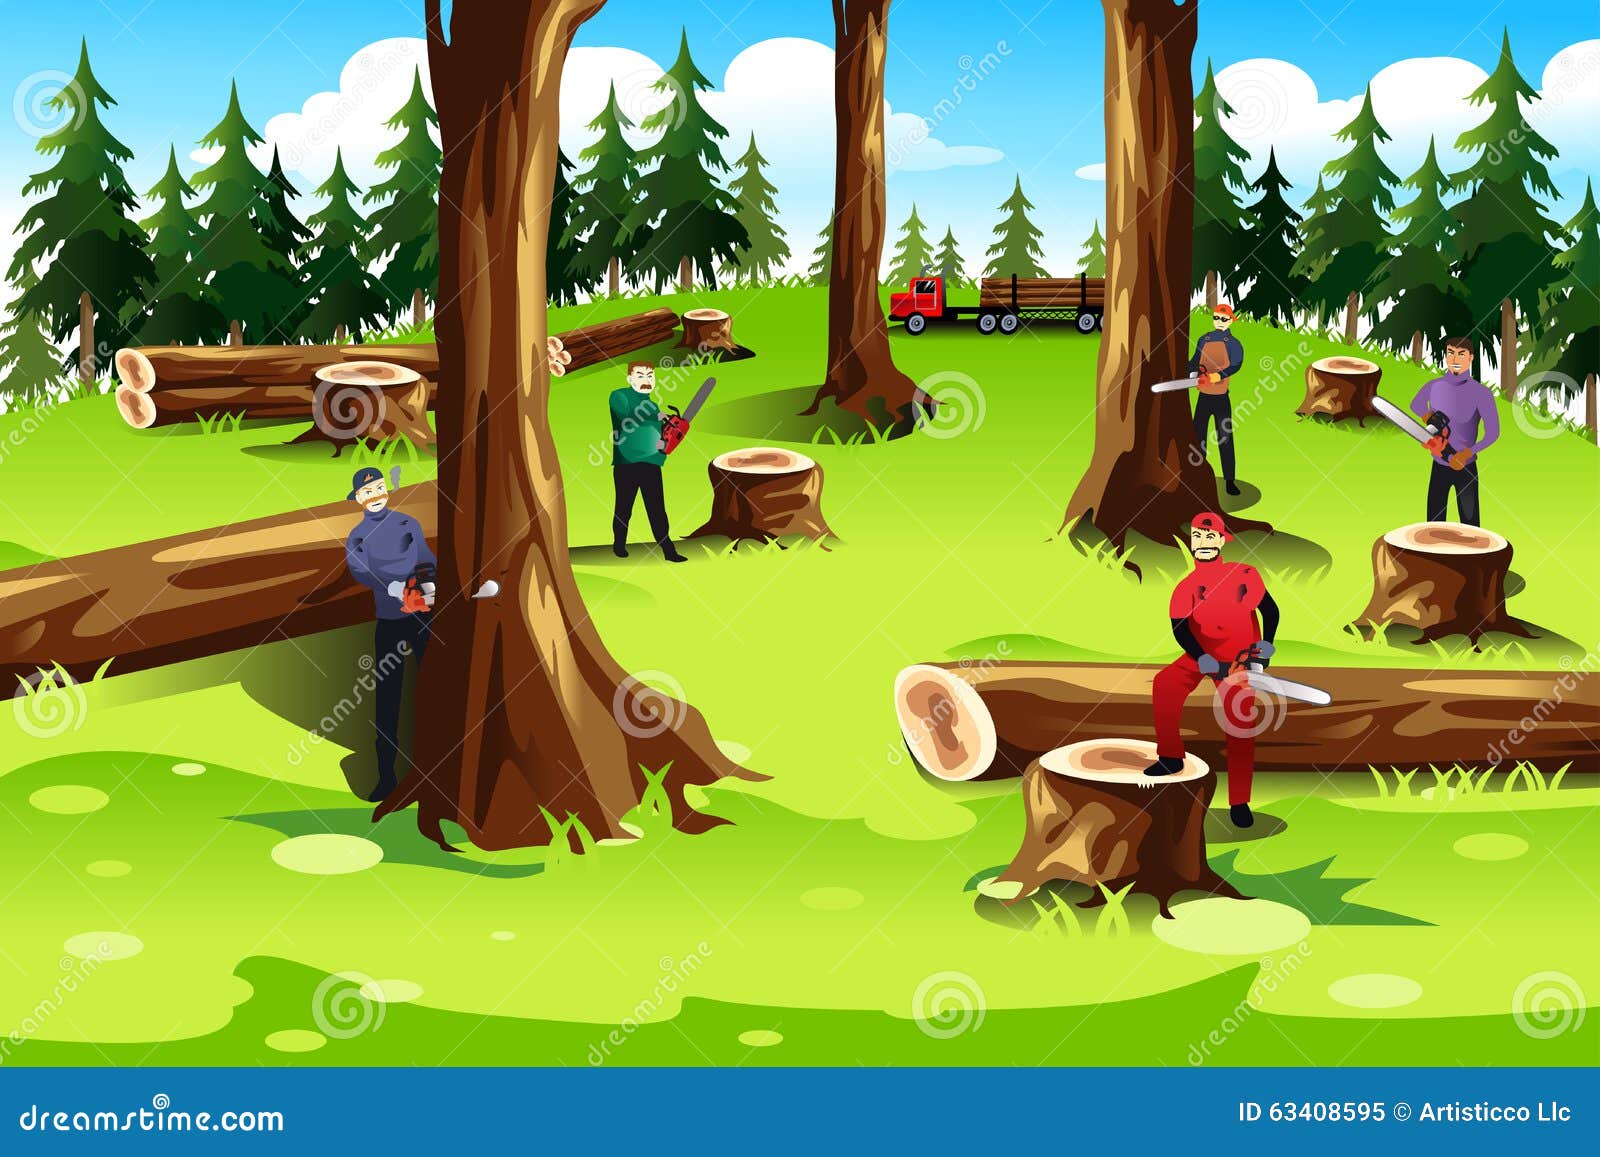 Человек рубит лес. Вырубка леса для детей. Мультяшные деревья в лесу. Вырубка лесов для детей. Лесорубы рубят деревья детям.